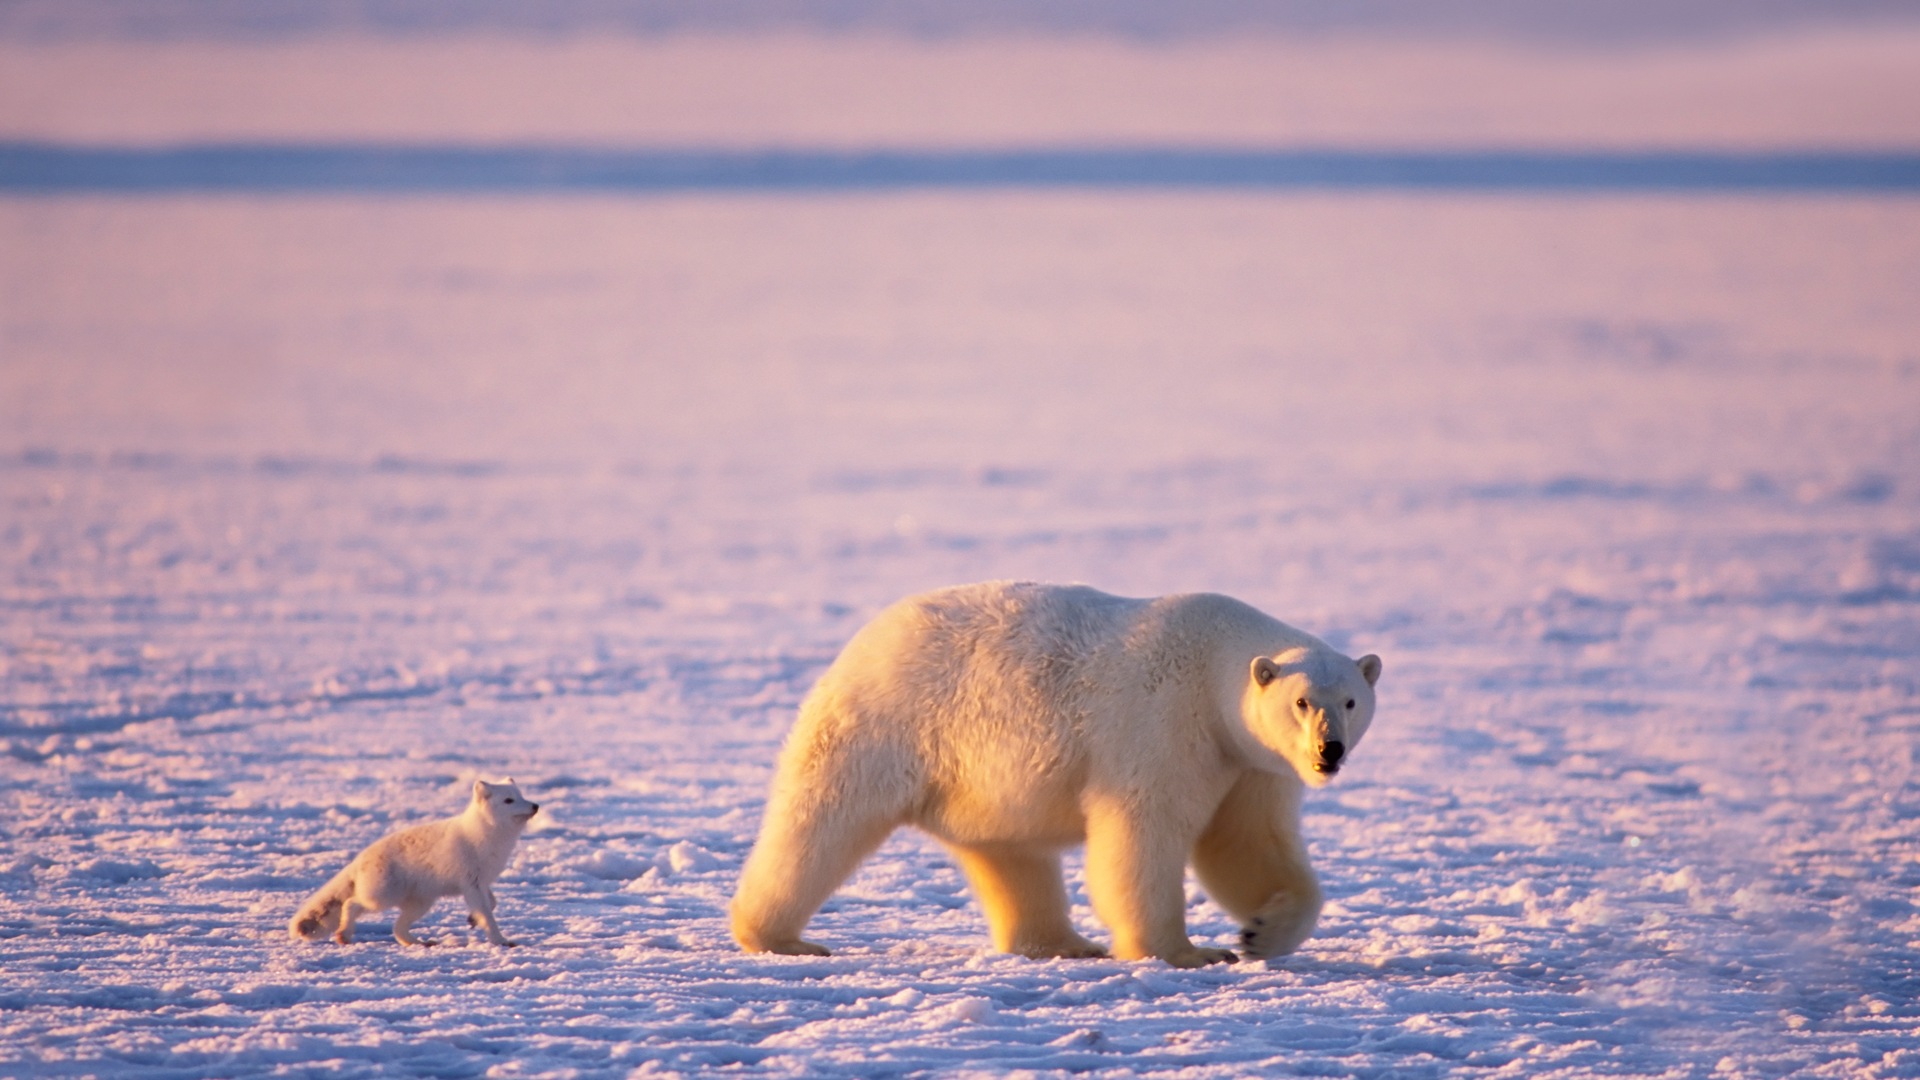 Windows 8: Fondos del Ártico, el paisaje ecológico, ártico animales #10 - 1920x1080